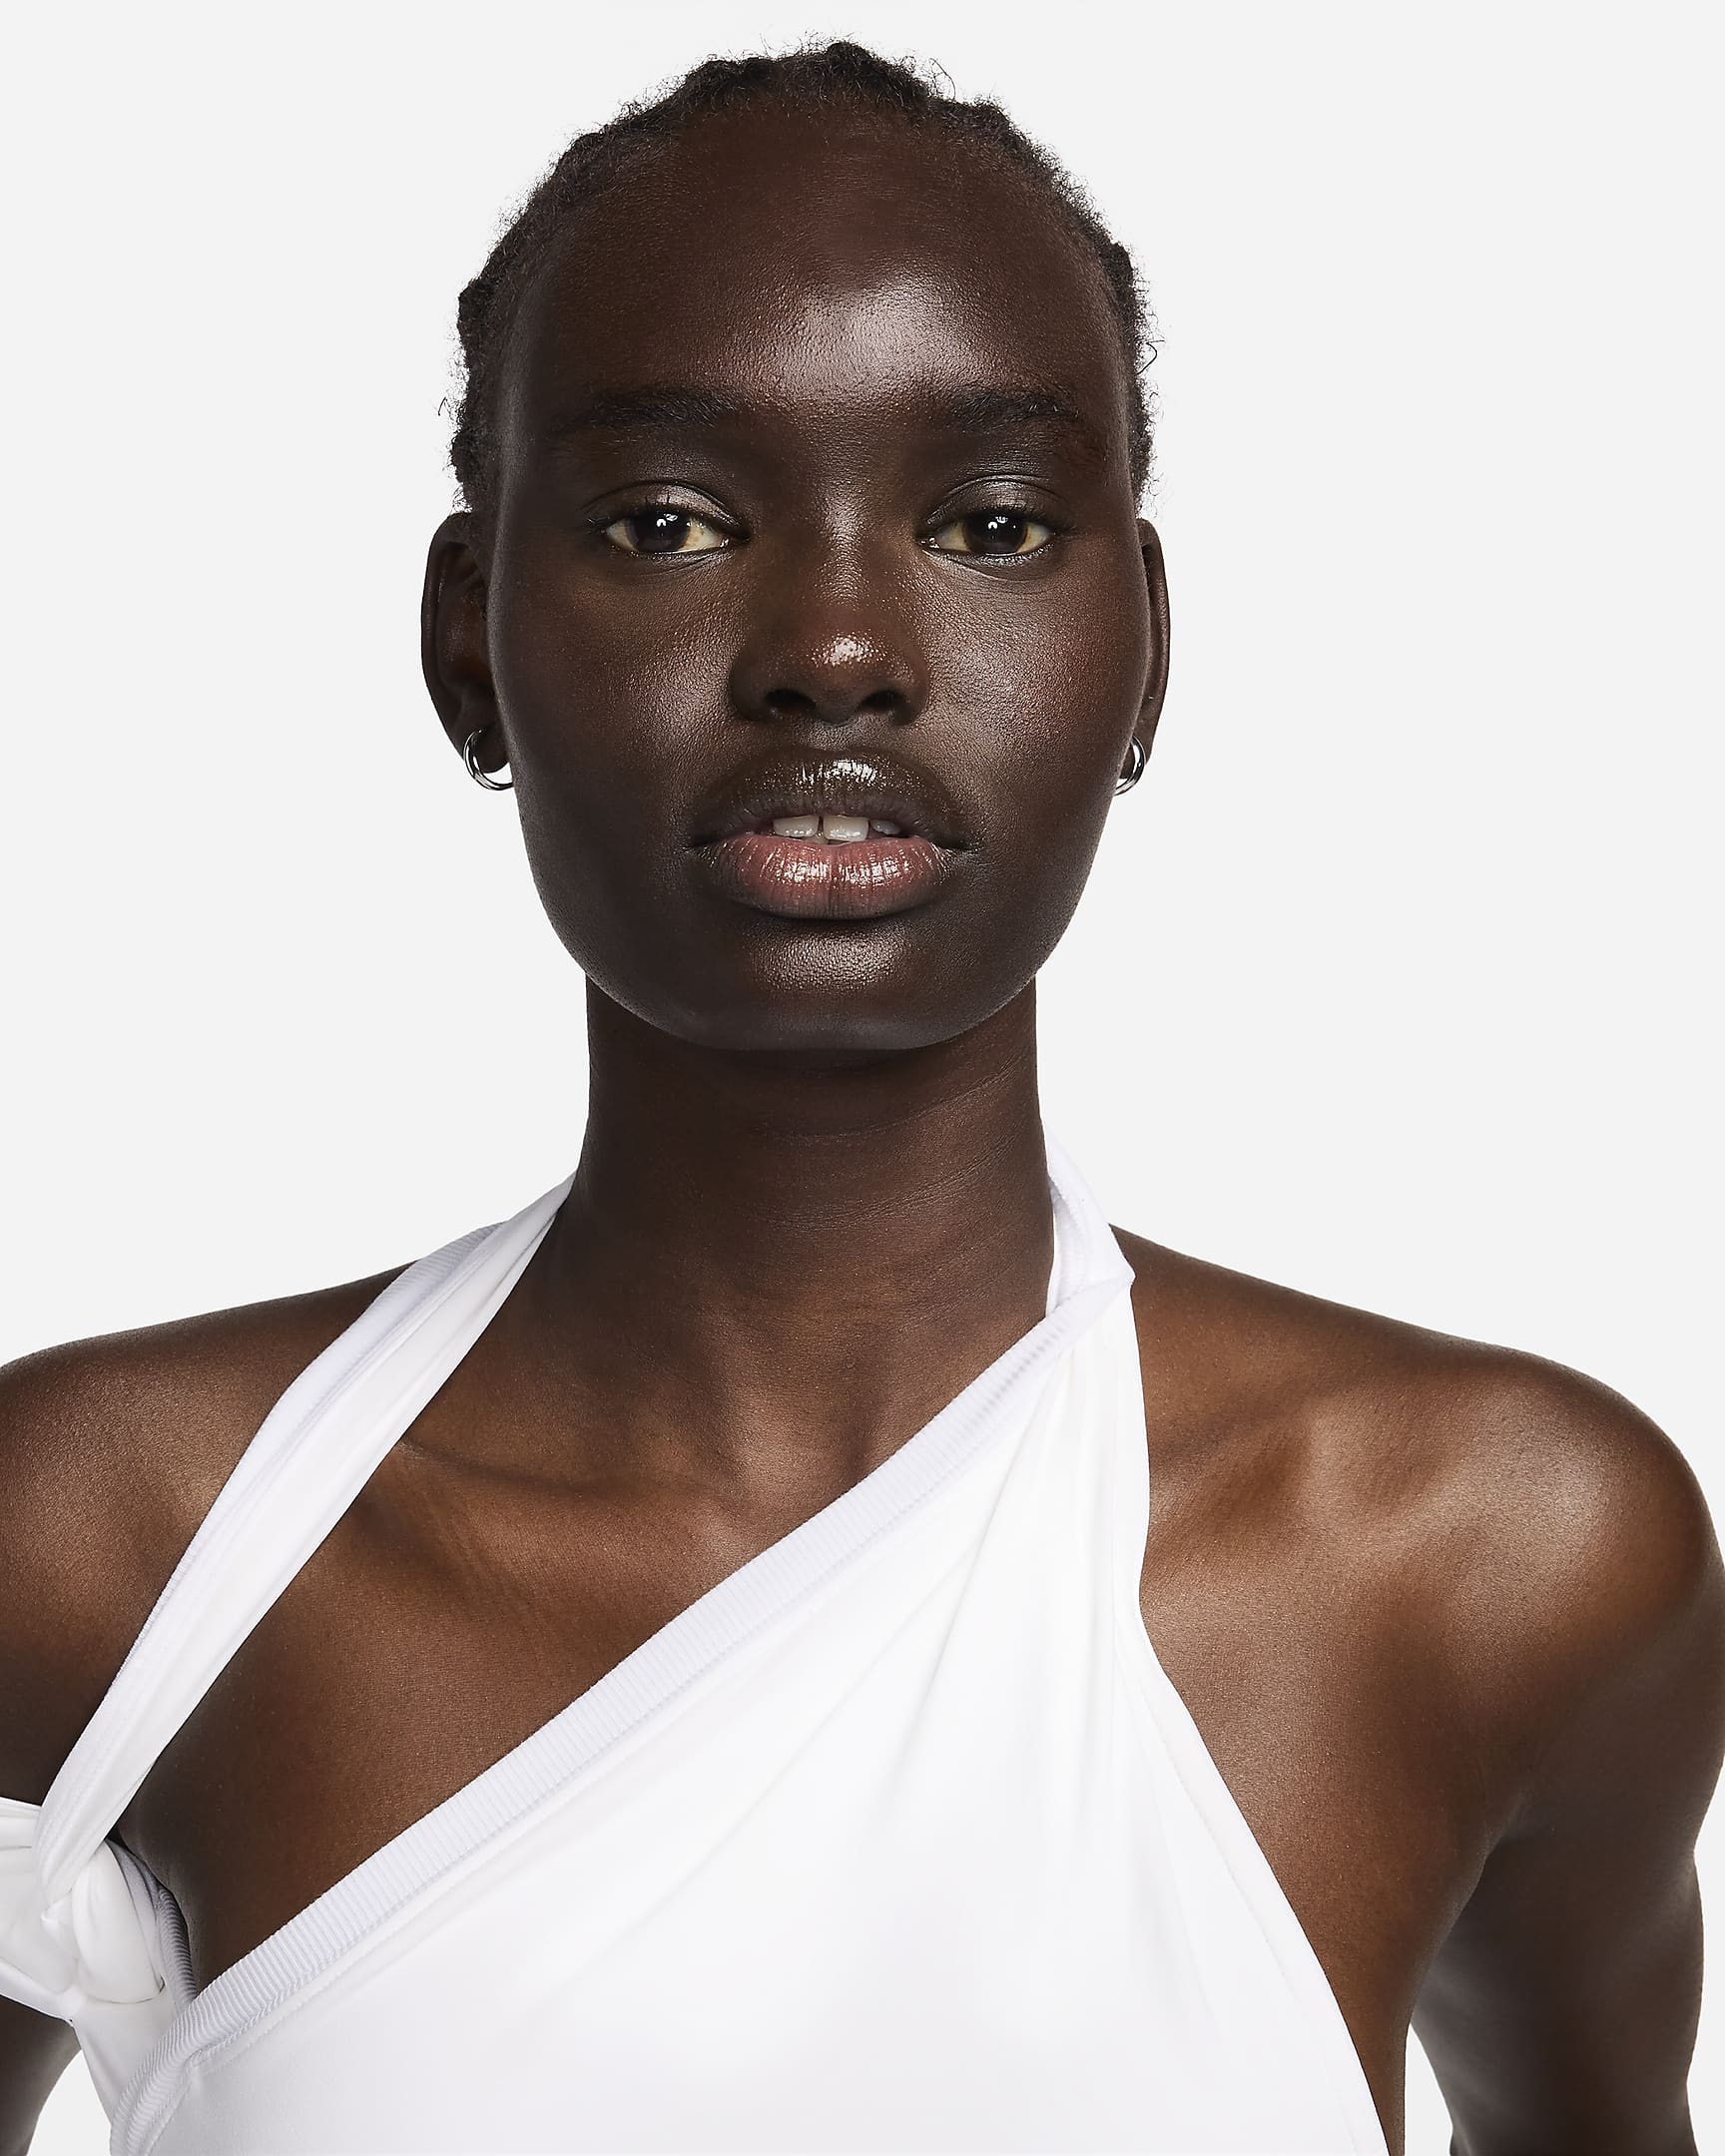 Nike x Jacquemus Women's Layered Dress - White